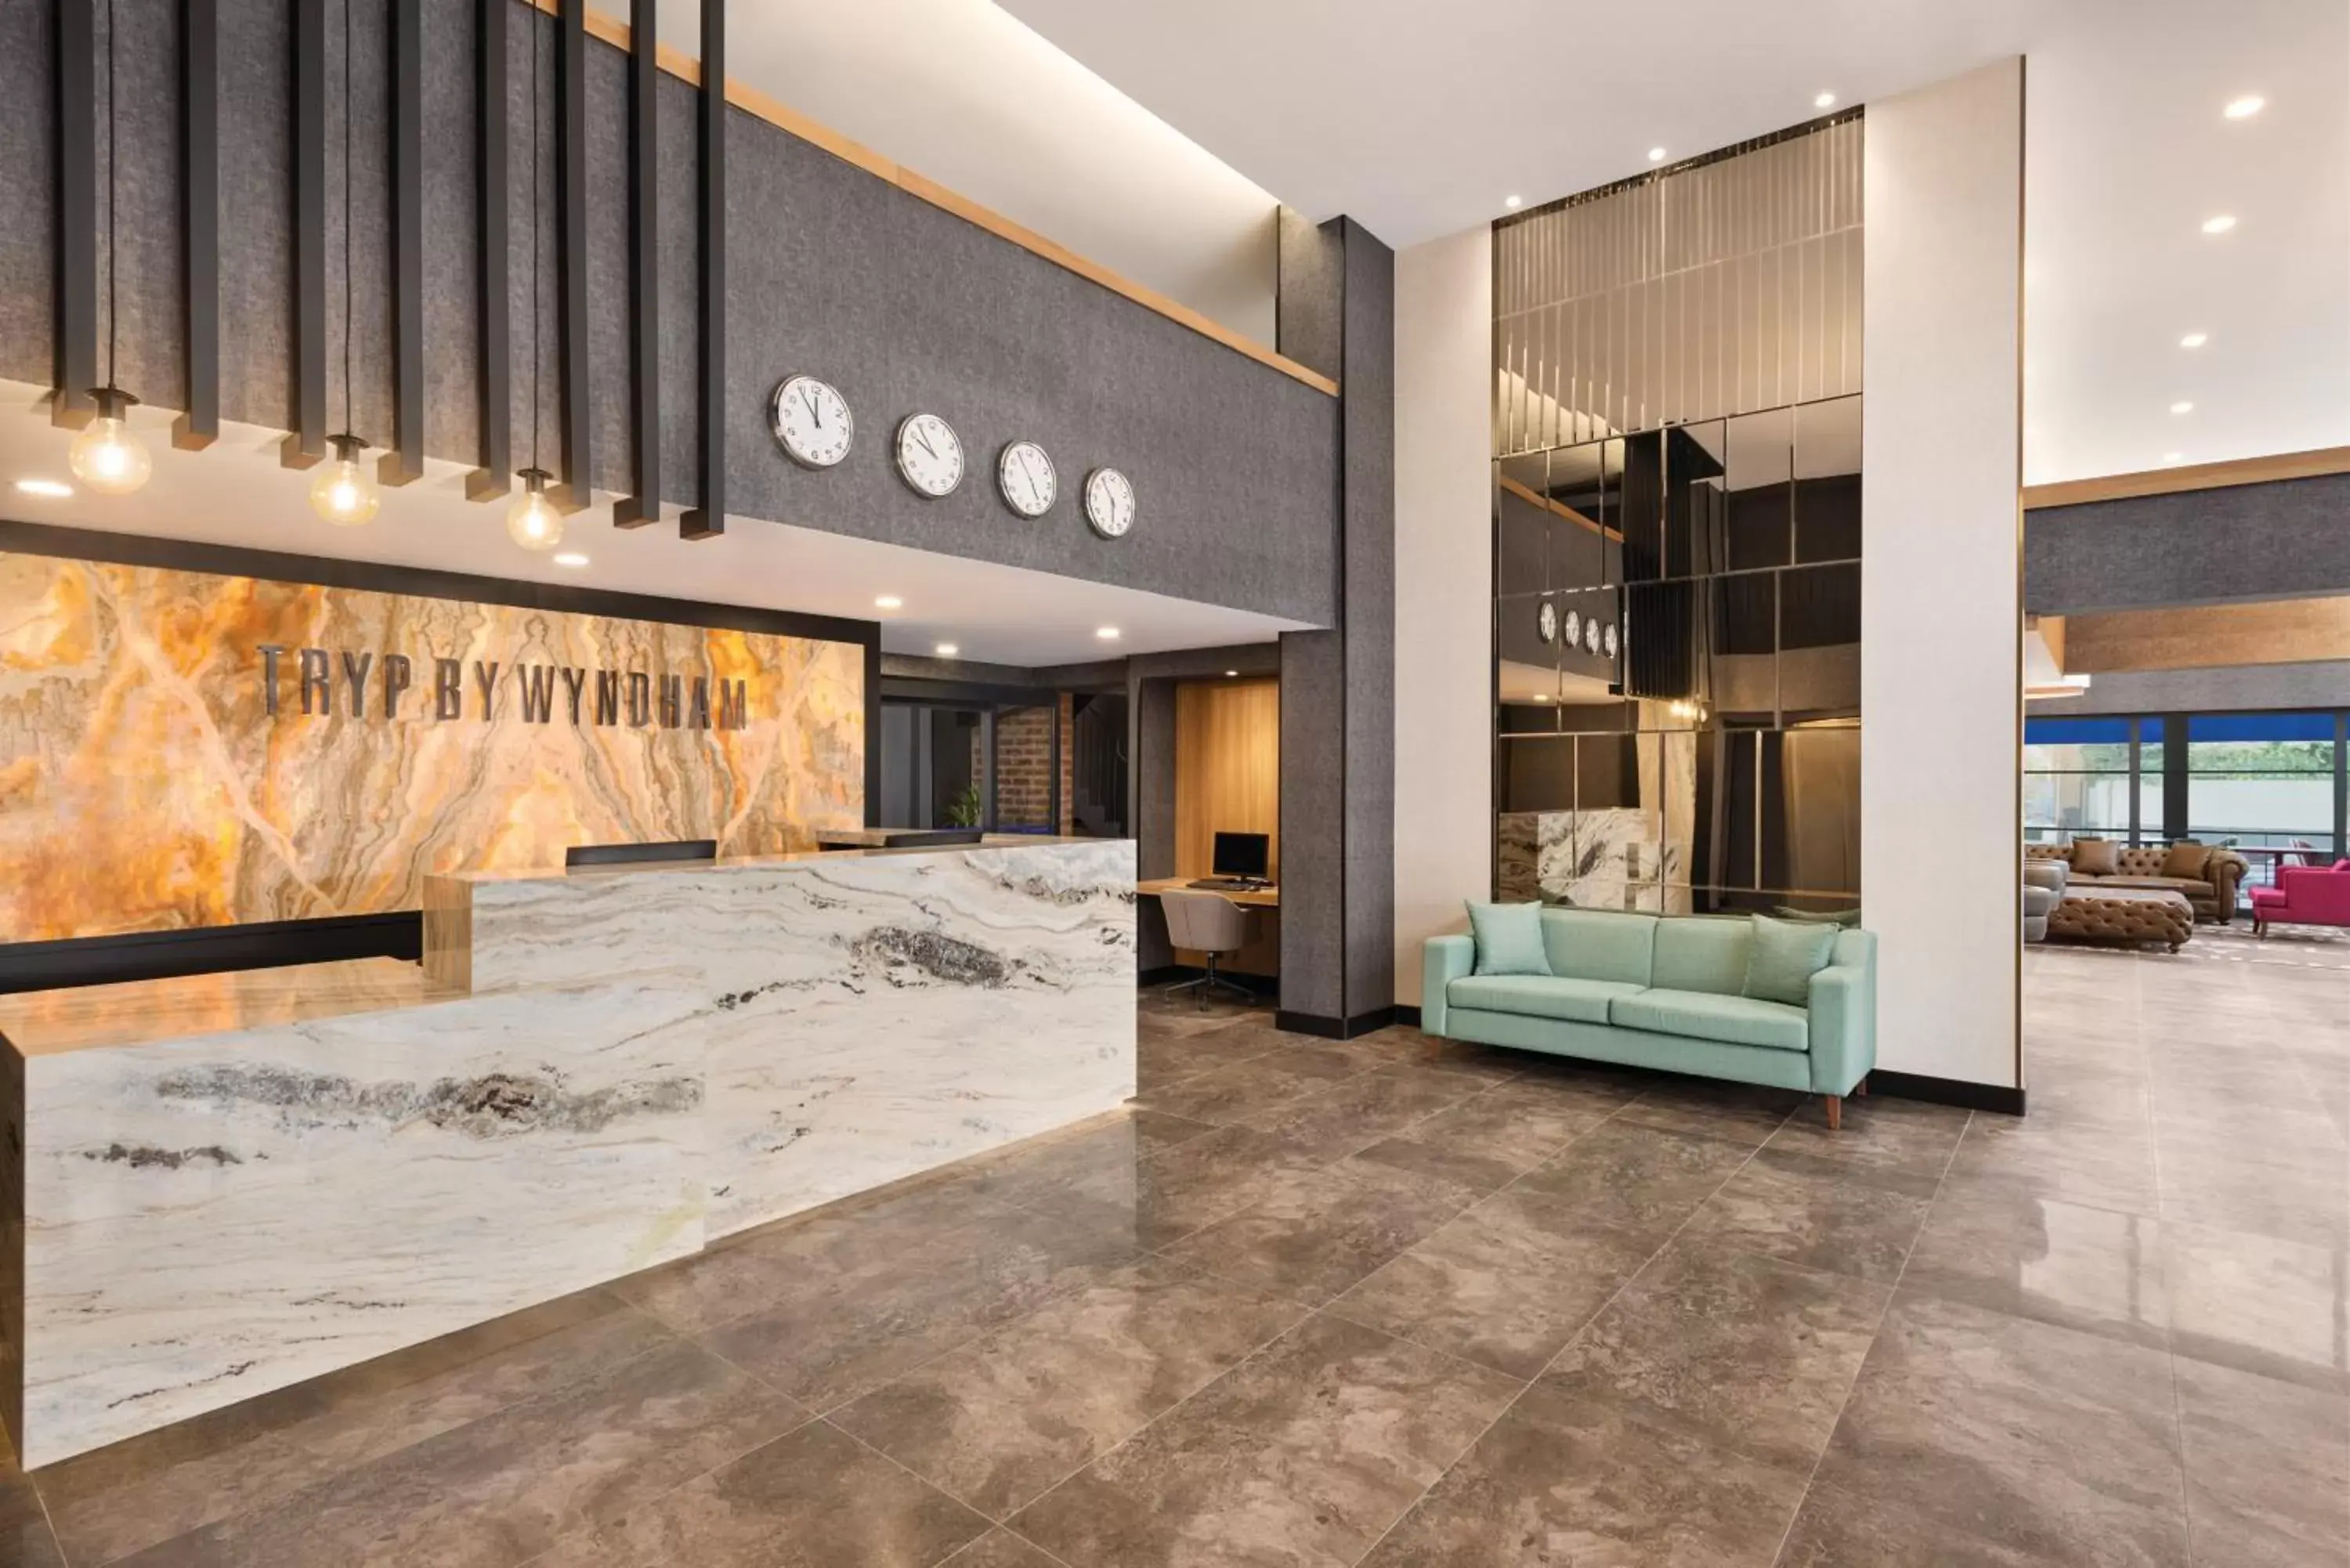 Lobby or reception in Tryp by Wyndham Istanbul Atasehir